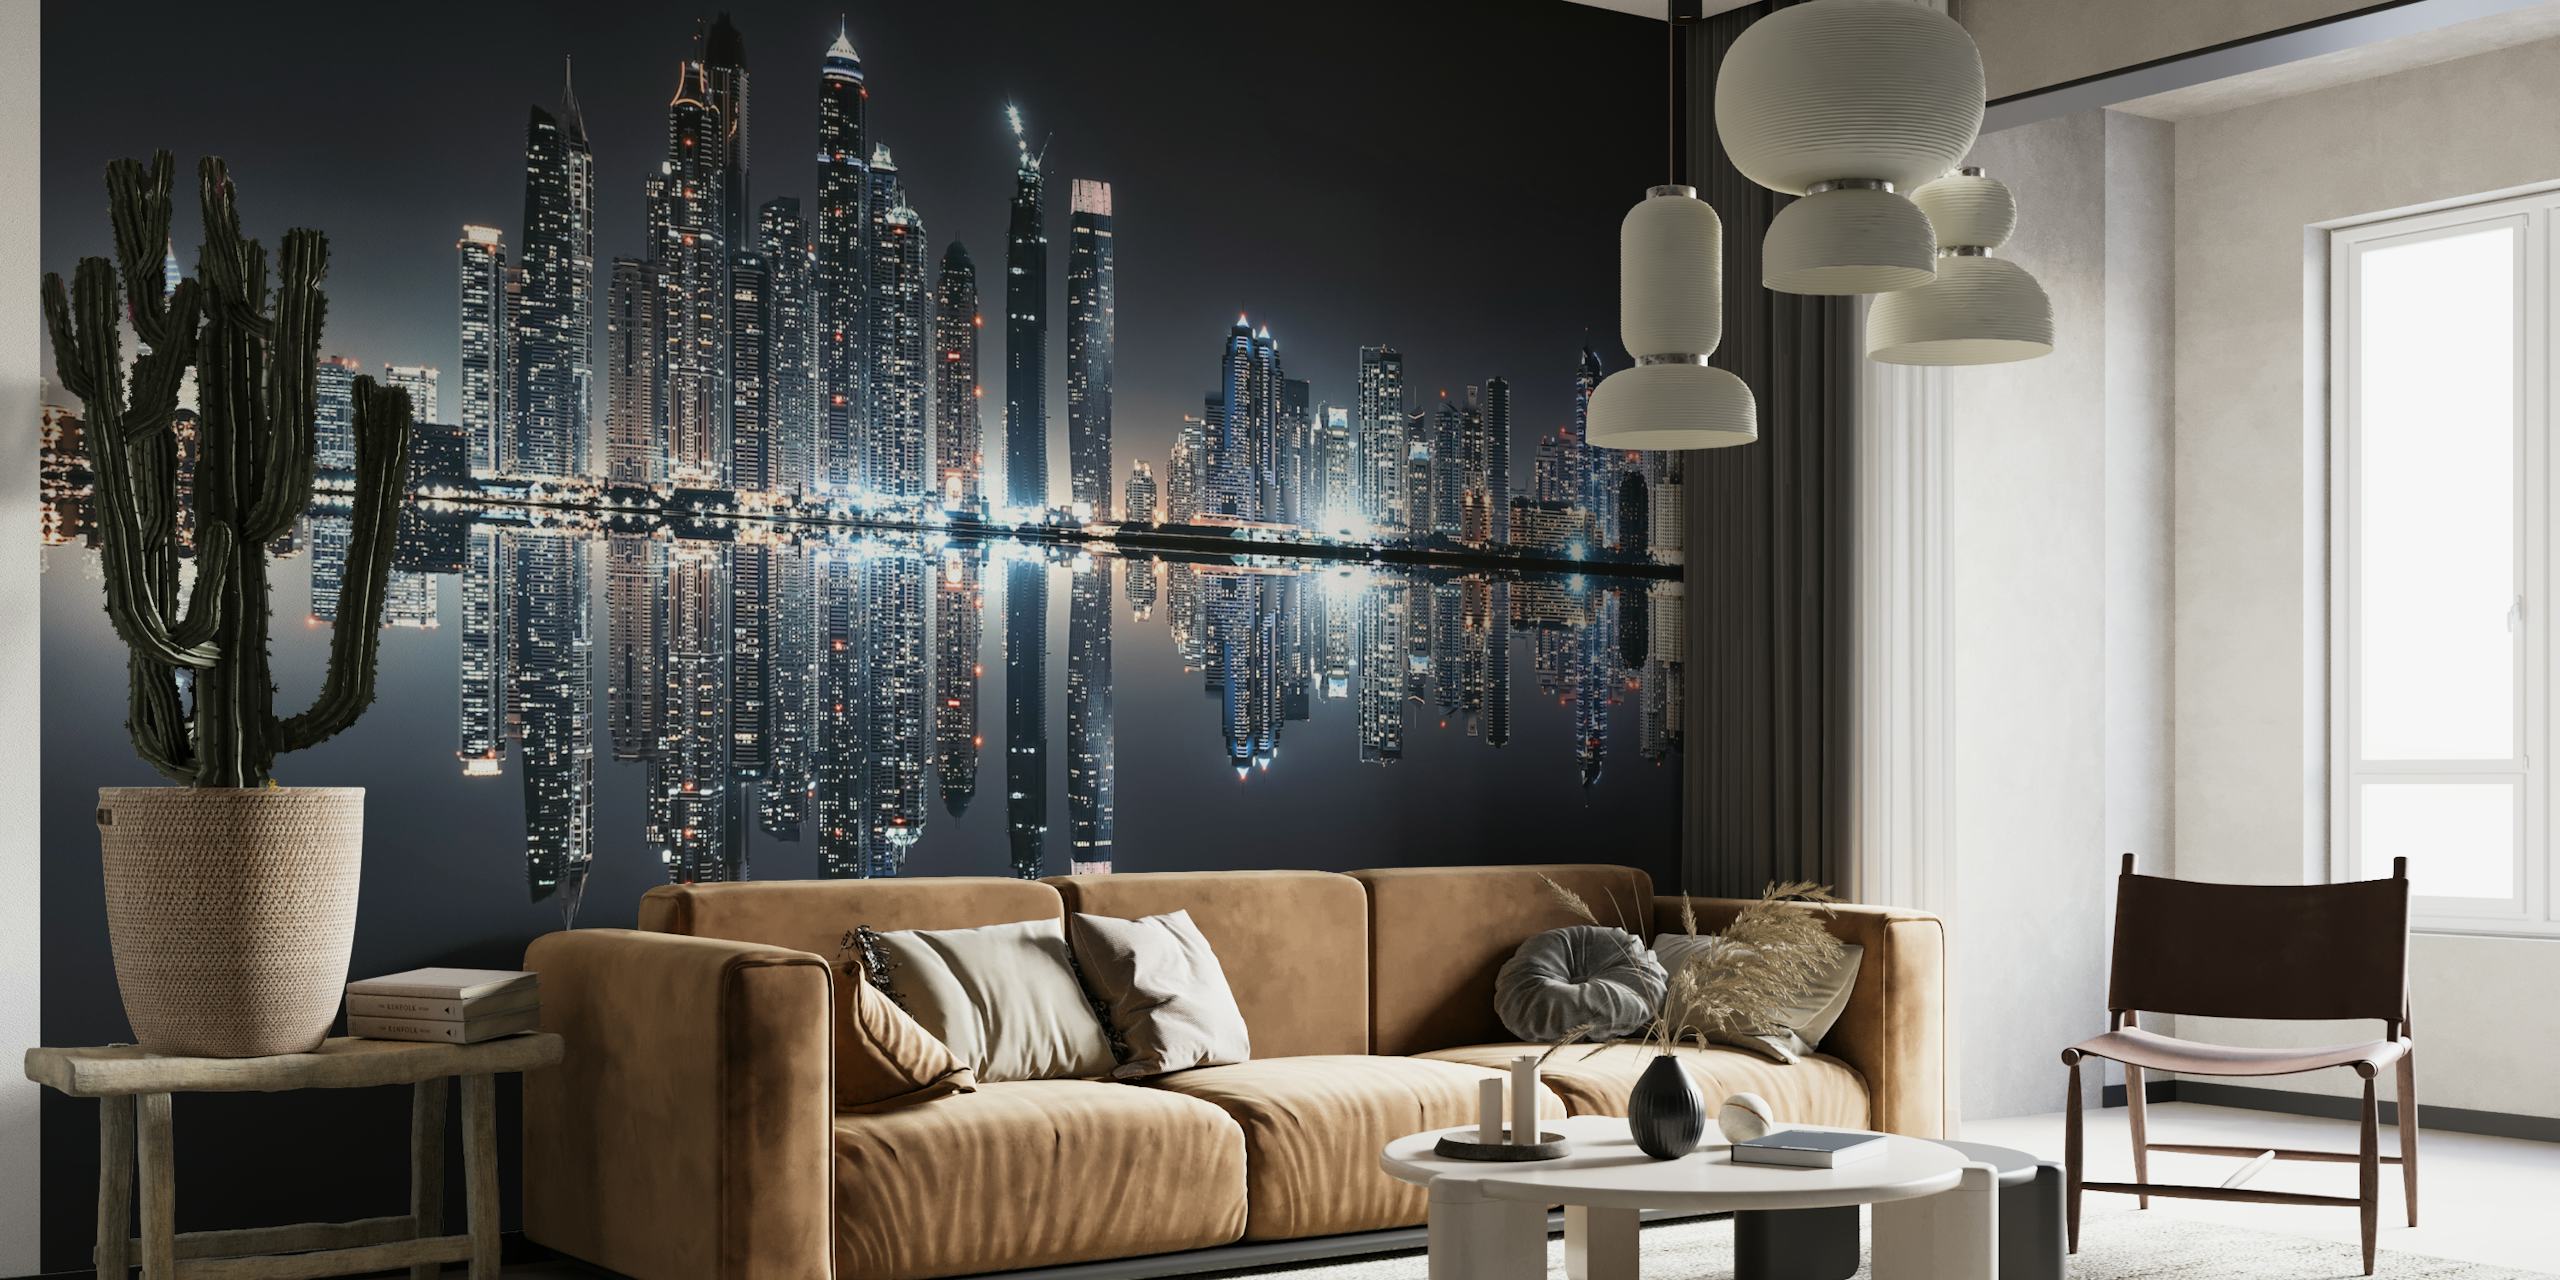 Fototapete der Skyline von Dubai Marina mit nächtlichen Stadtlichtern, die sich im Wasser spiegeln